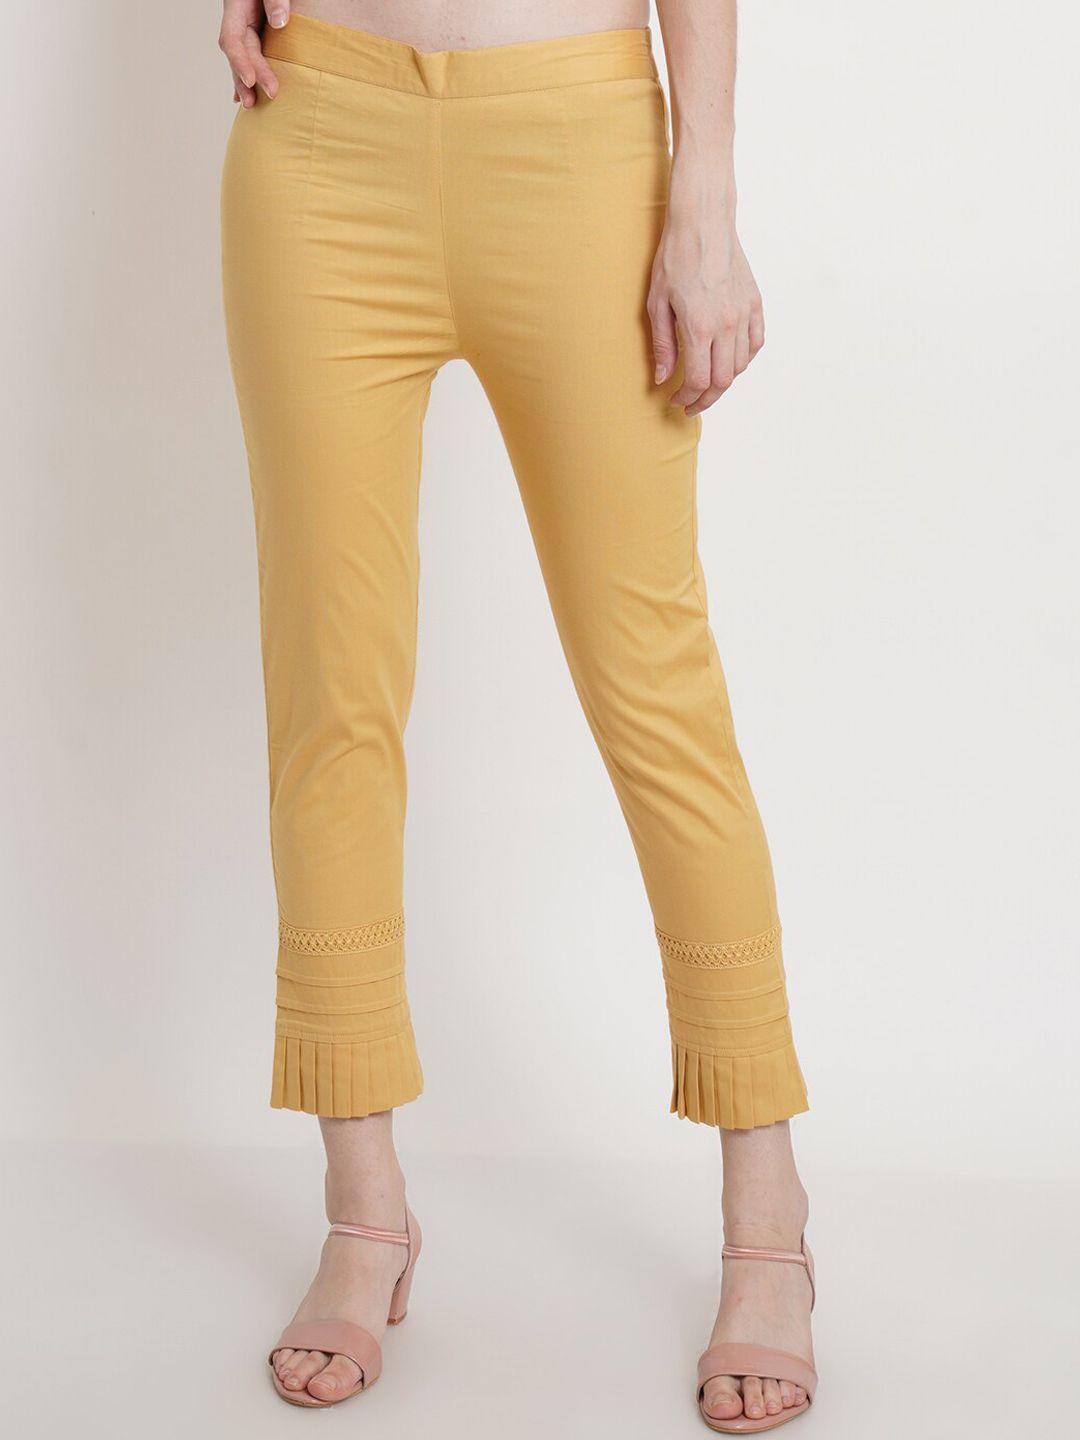 popwings-women-gold-toned-smart-trousers